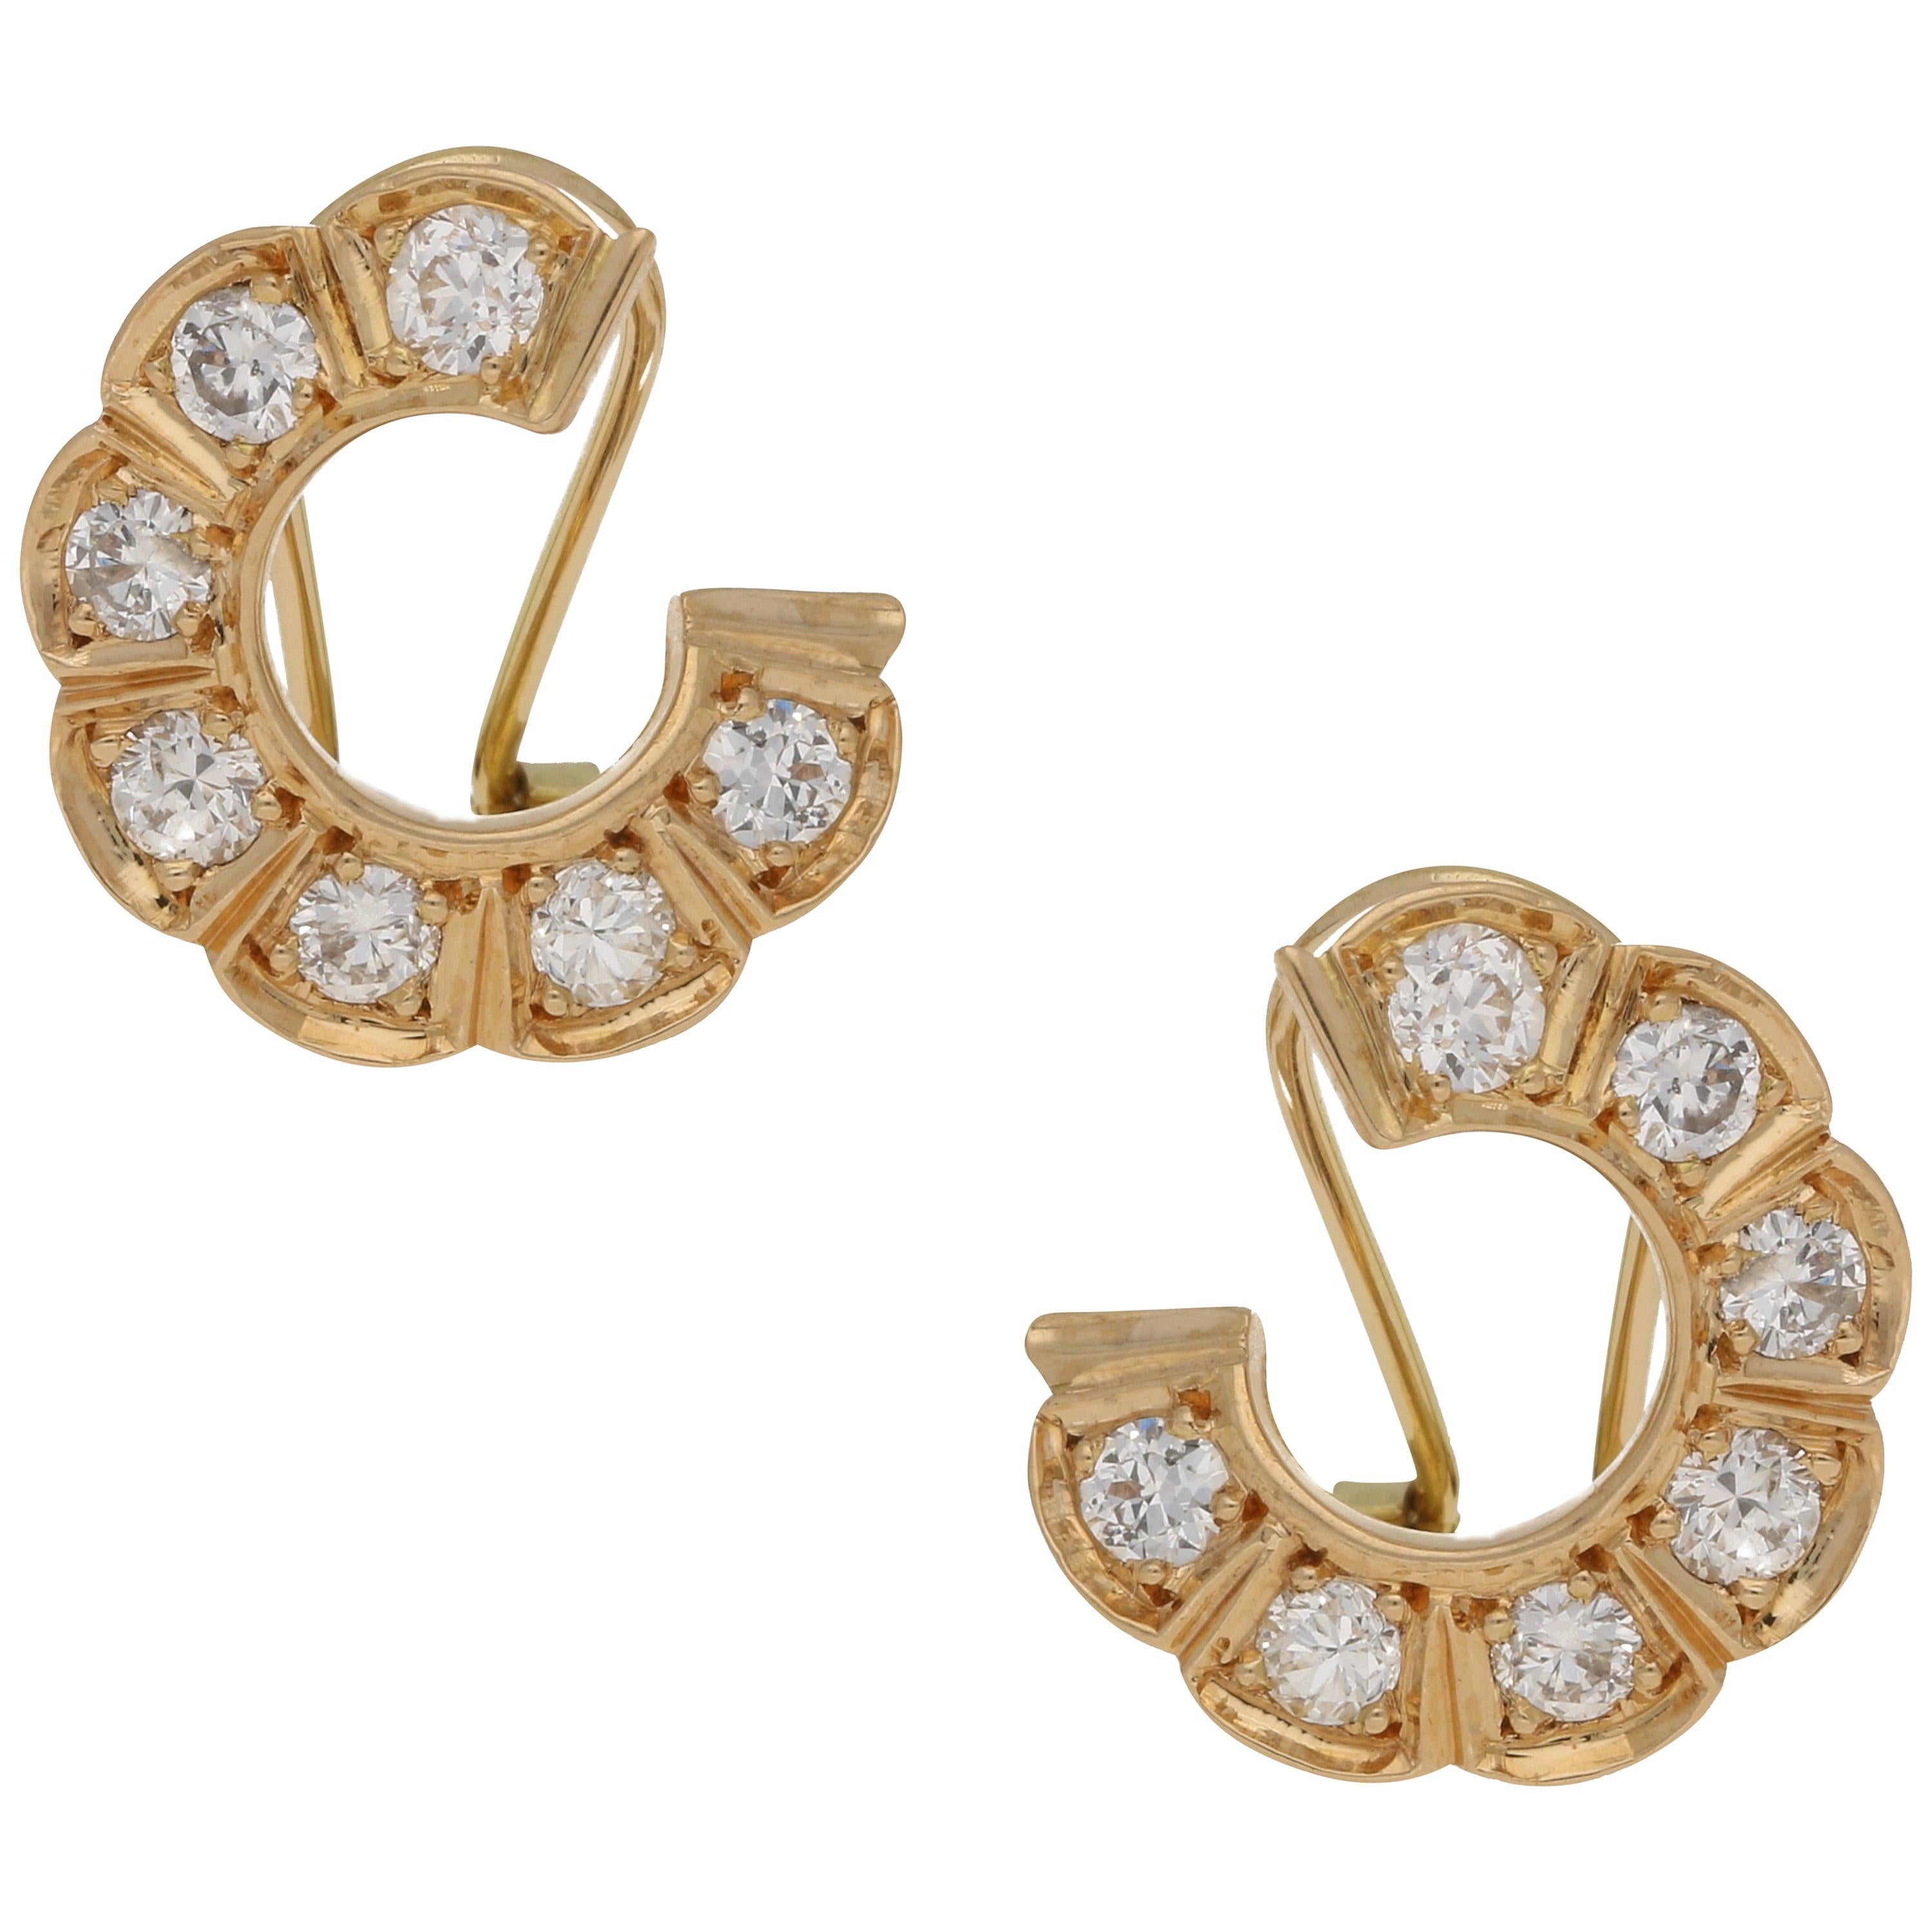 Vintage Diamond Set Circle Hoop Earrings Set in 18k Yellow Gold